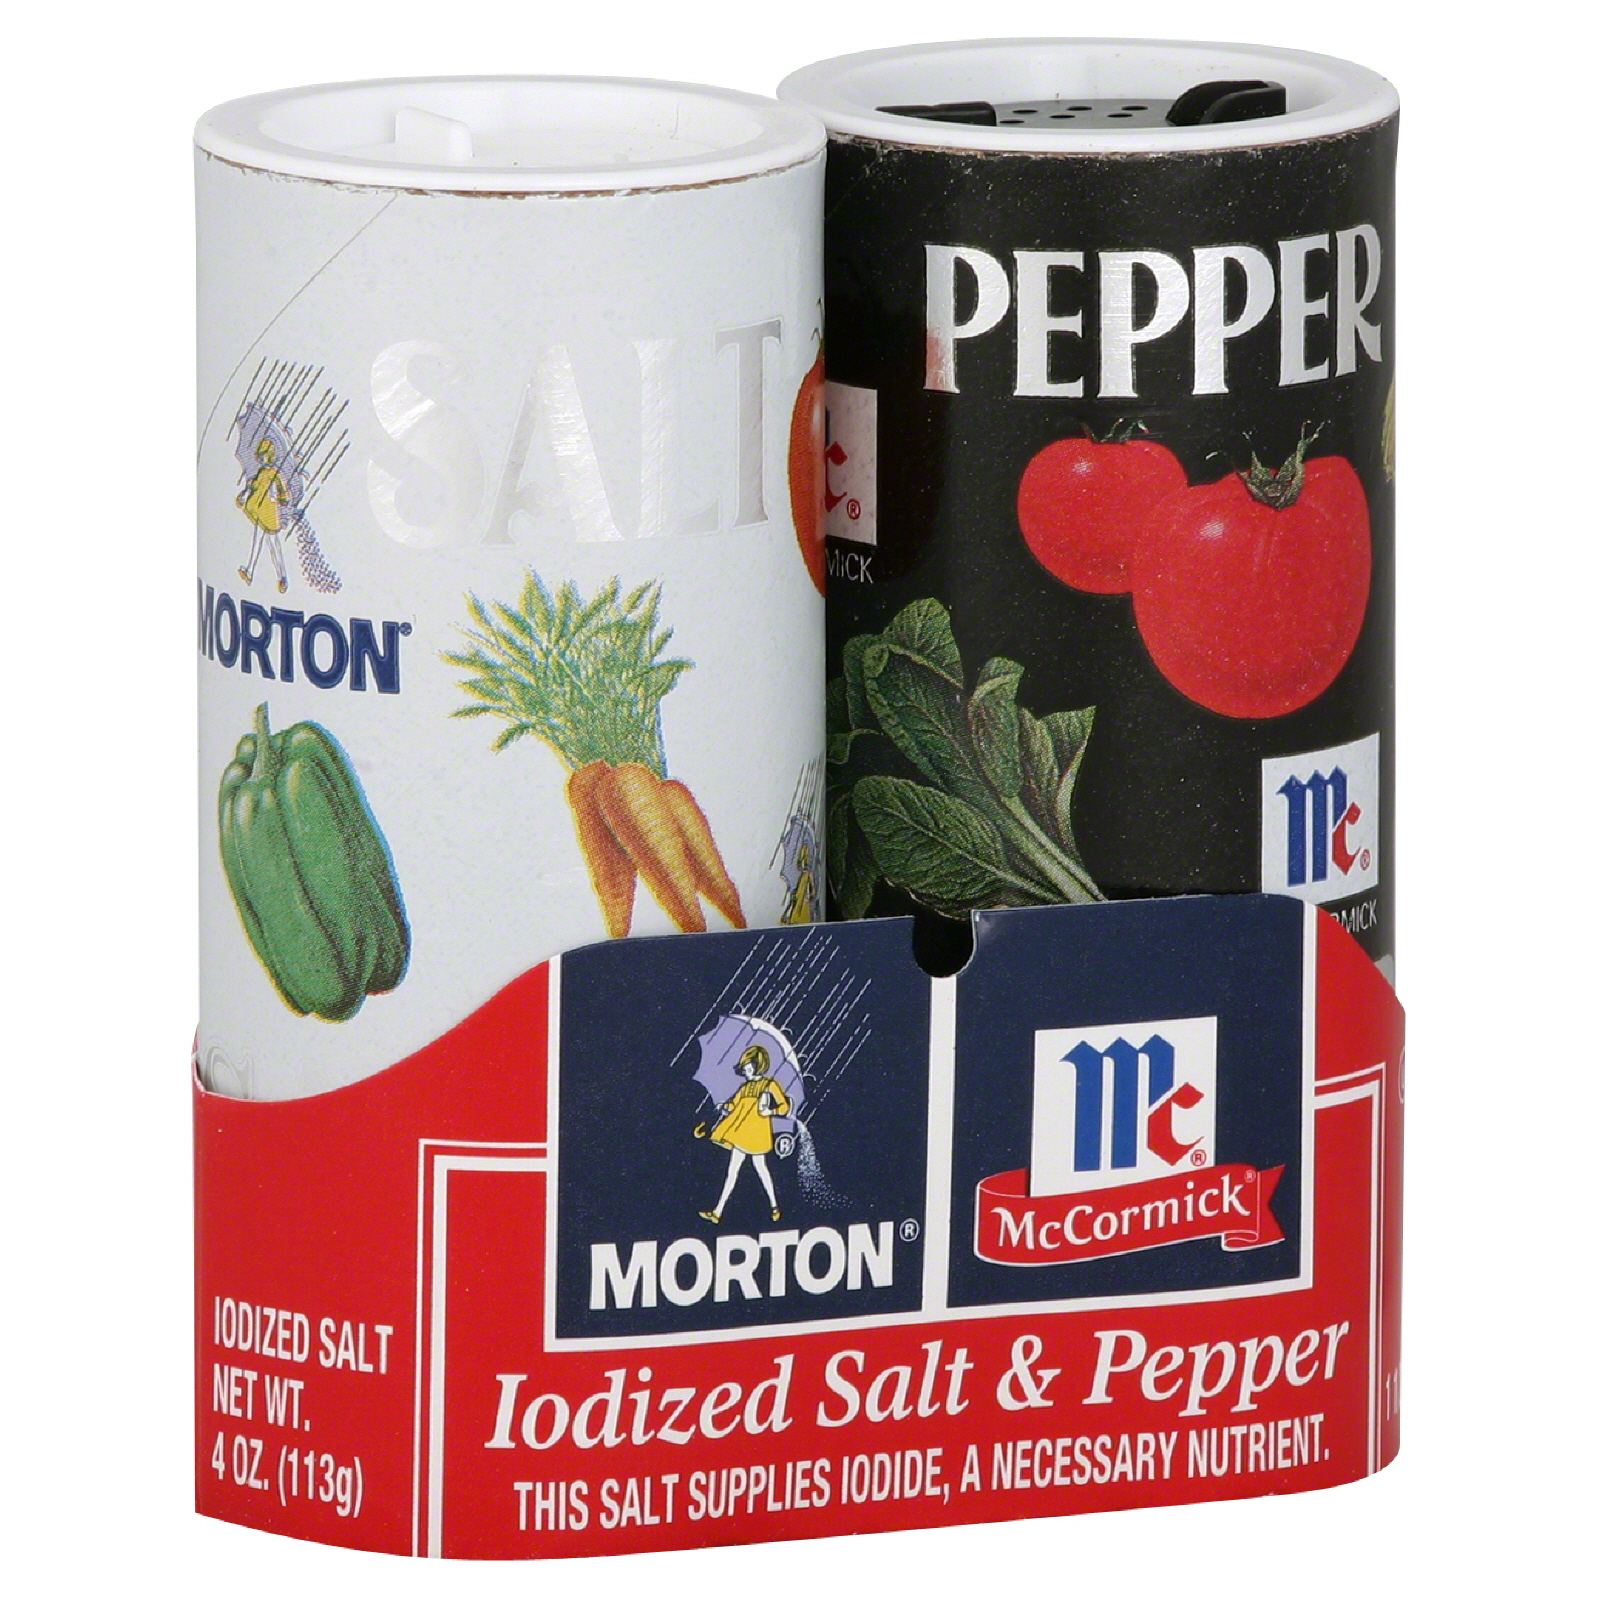 Morton Iodized Salt & Pepper, 5.5 oz (155 g)